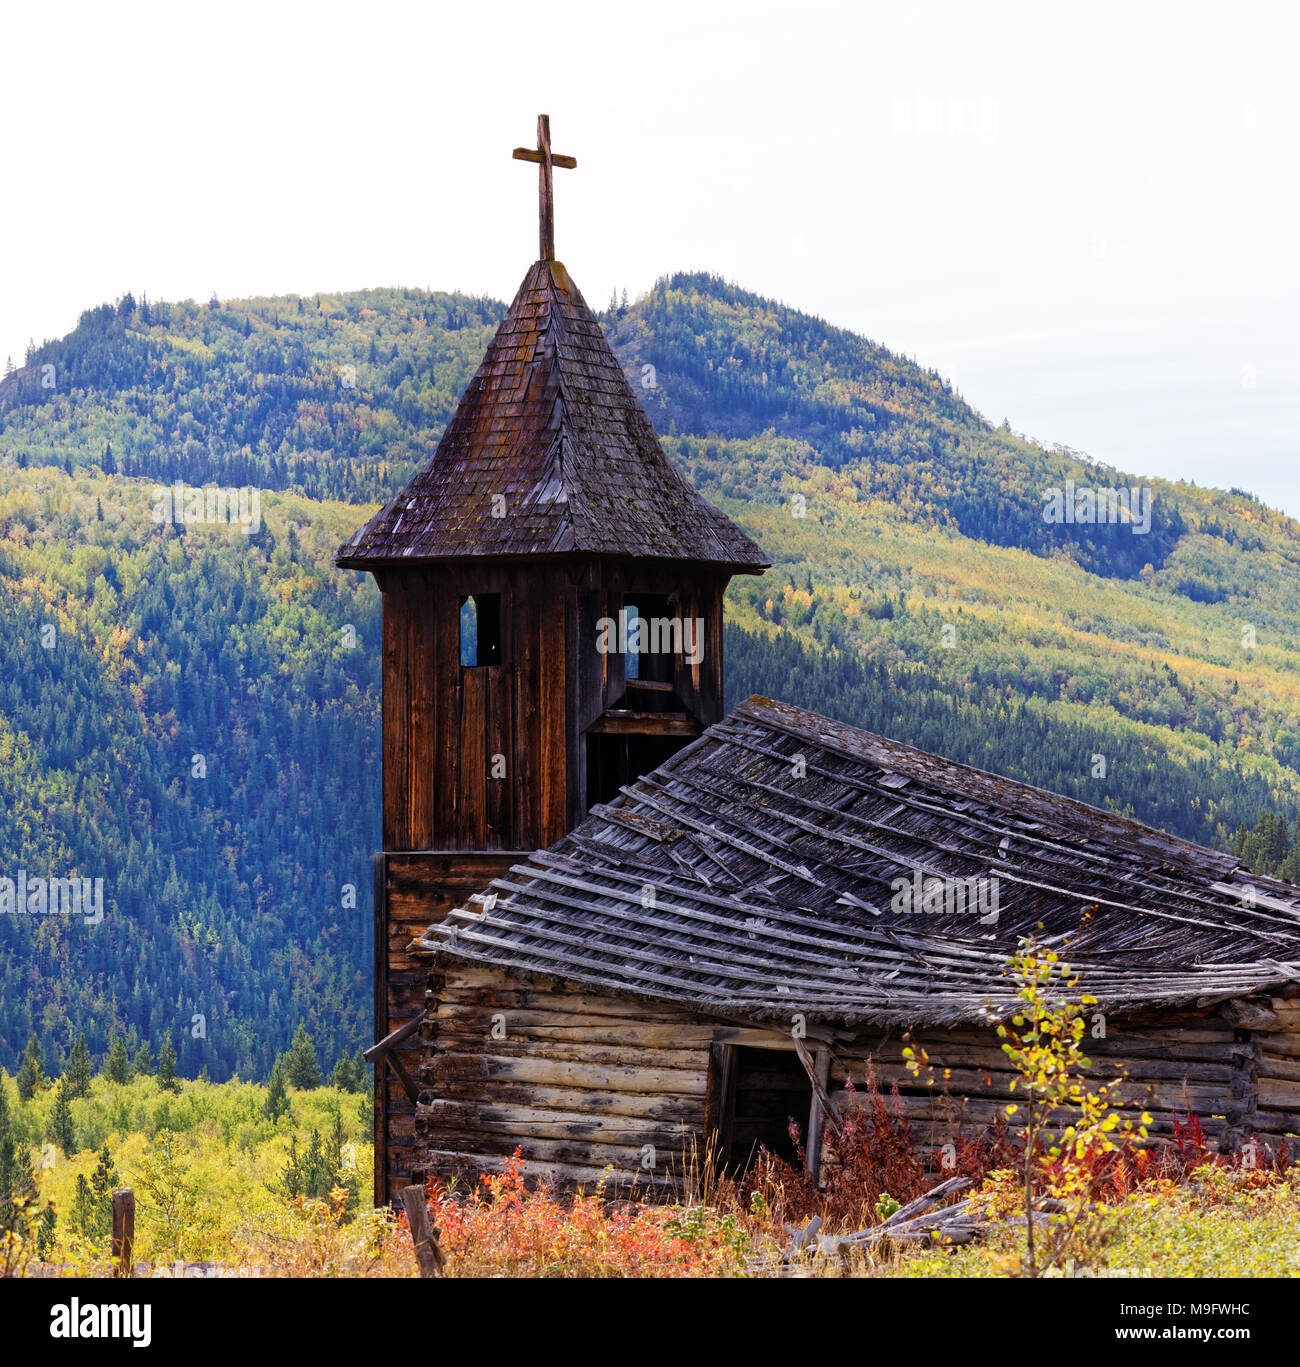 42,624.05132 verfallenen Falling Down hölzernen Glockenturm der Kirche Kreuz in den Bergen von British Columbia, Kanada, Indien, Ersten, Reservierung Stockfoto